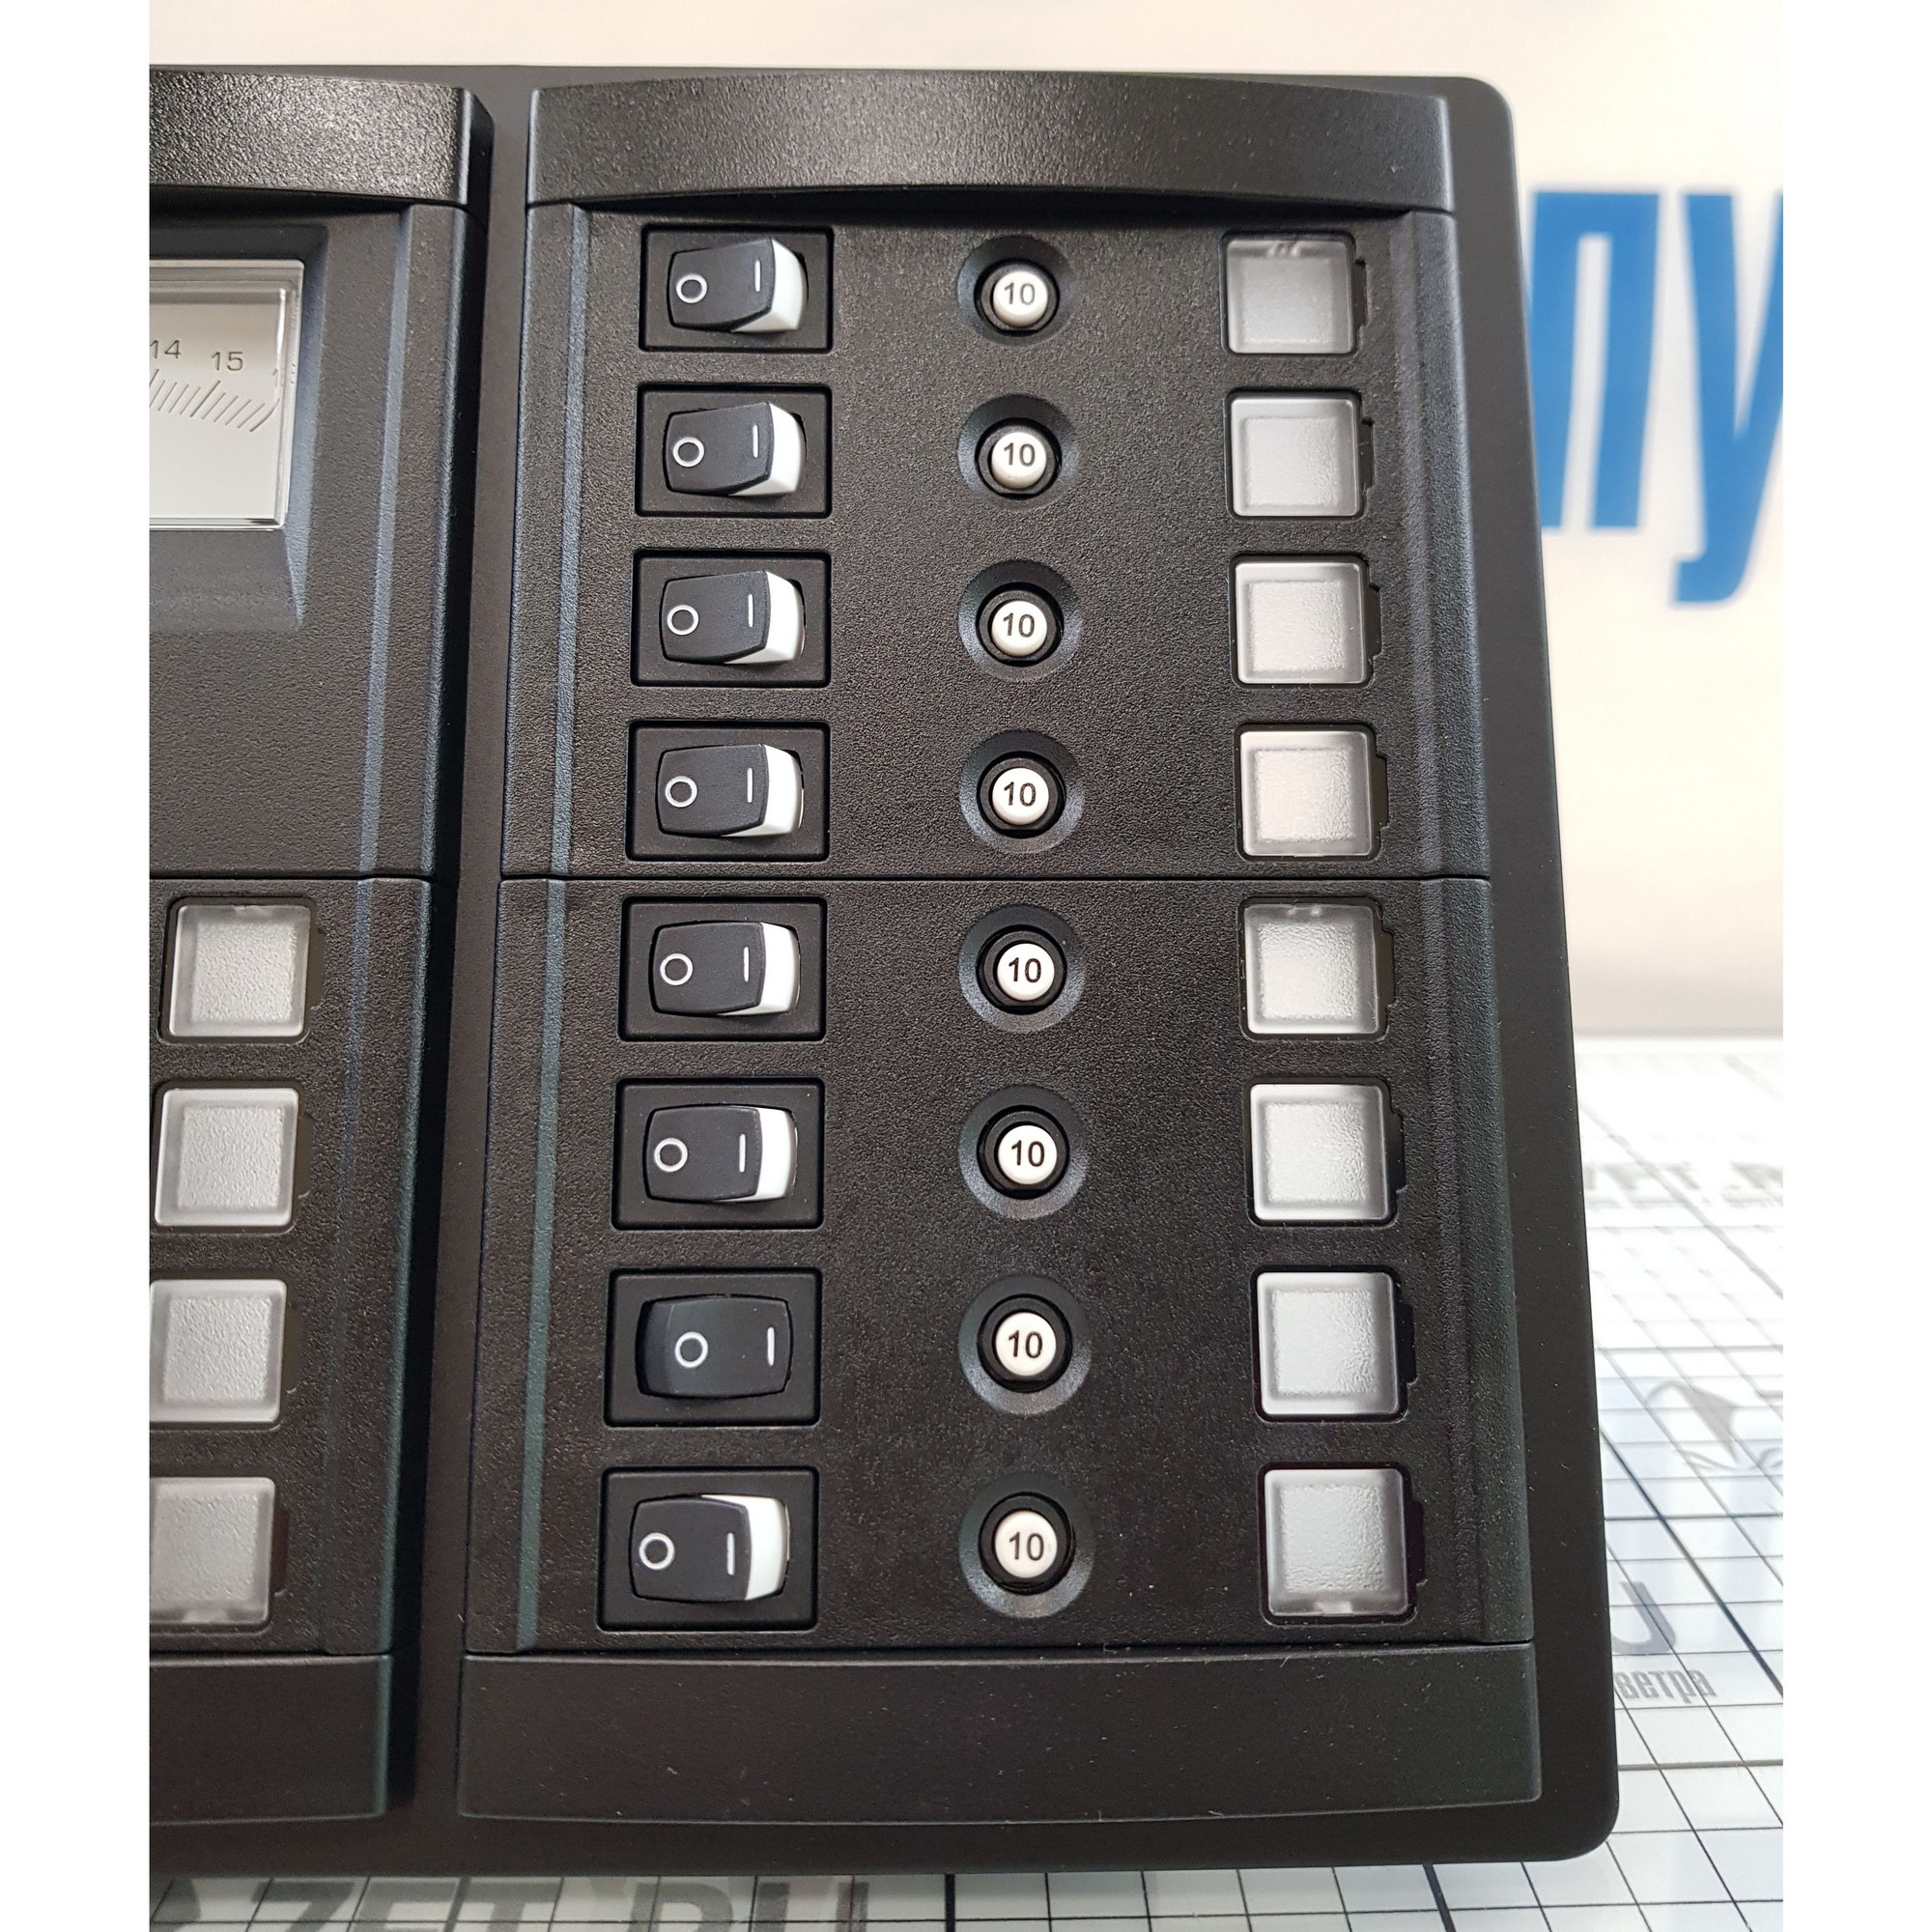 Купить Панель выключателей Blue Sea 360 Panel System 1464 12В 120А вольтметр/12 автоматов/12 выключателей для 3 АКБ 235x197мм 7ft.ru в интернет магазине Семь Футов